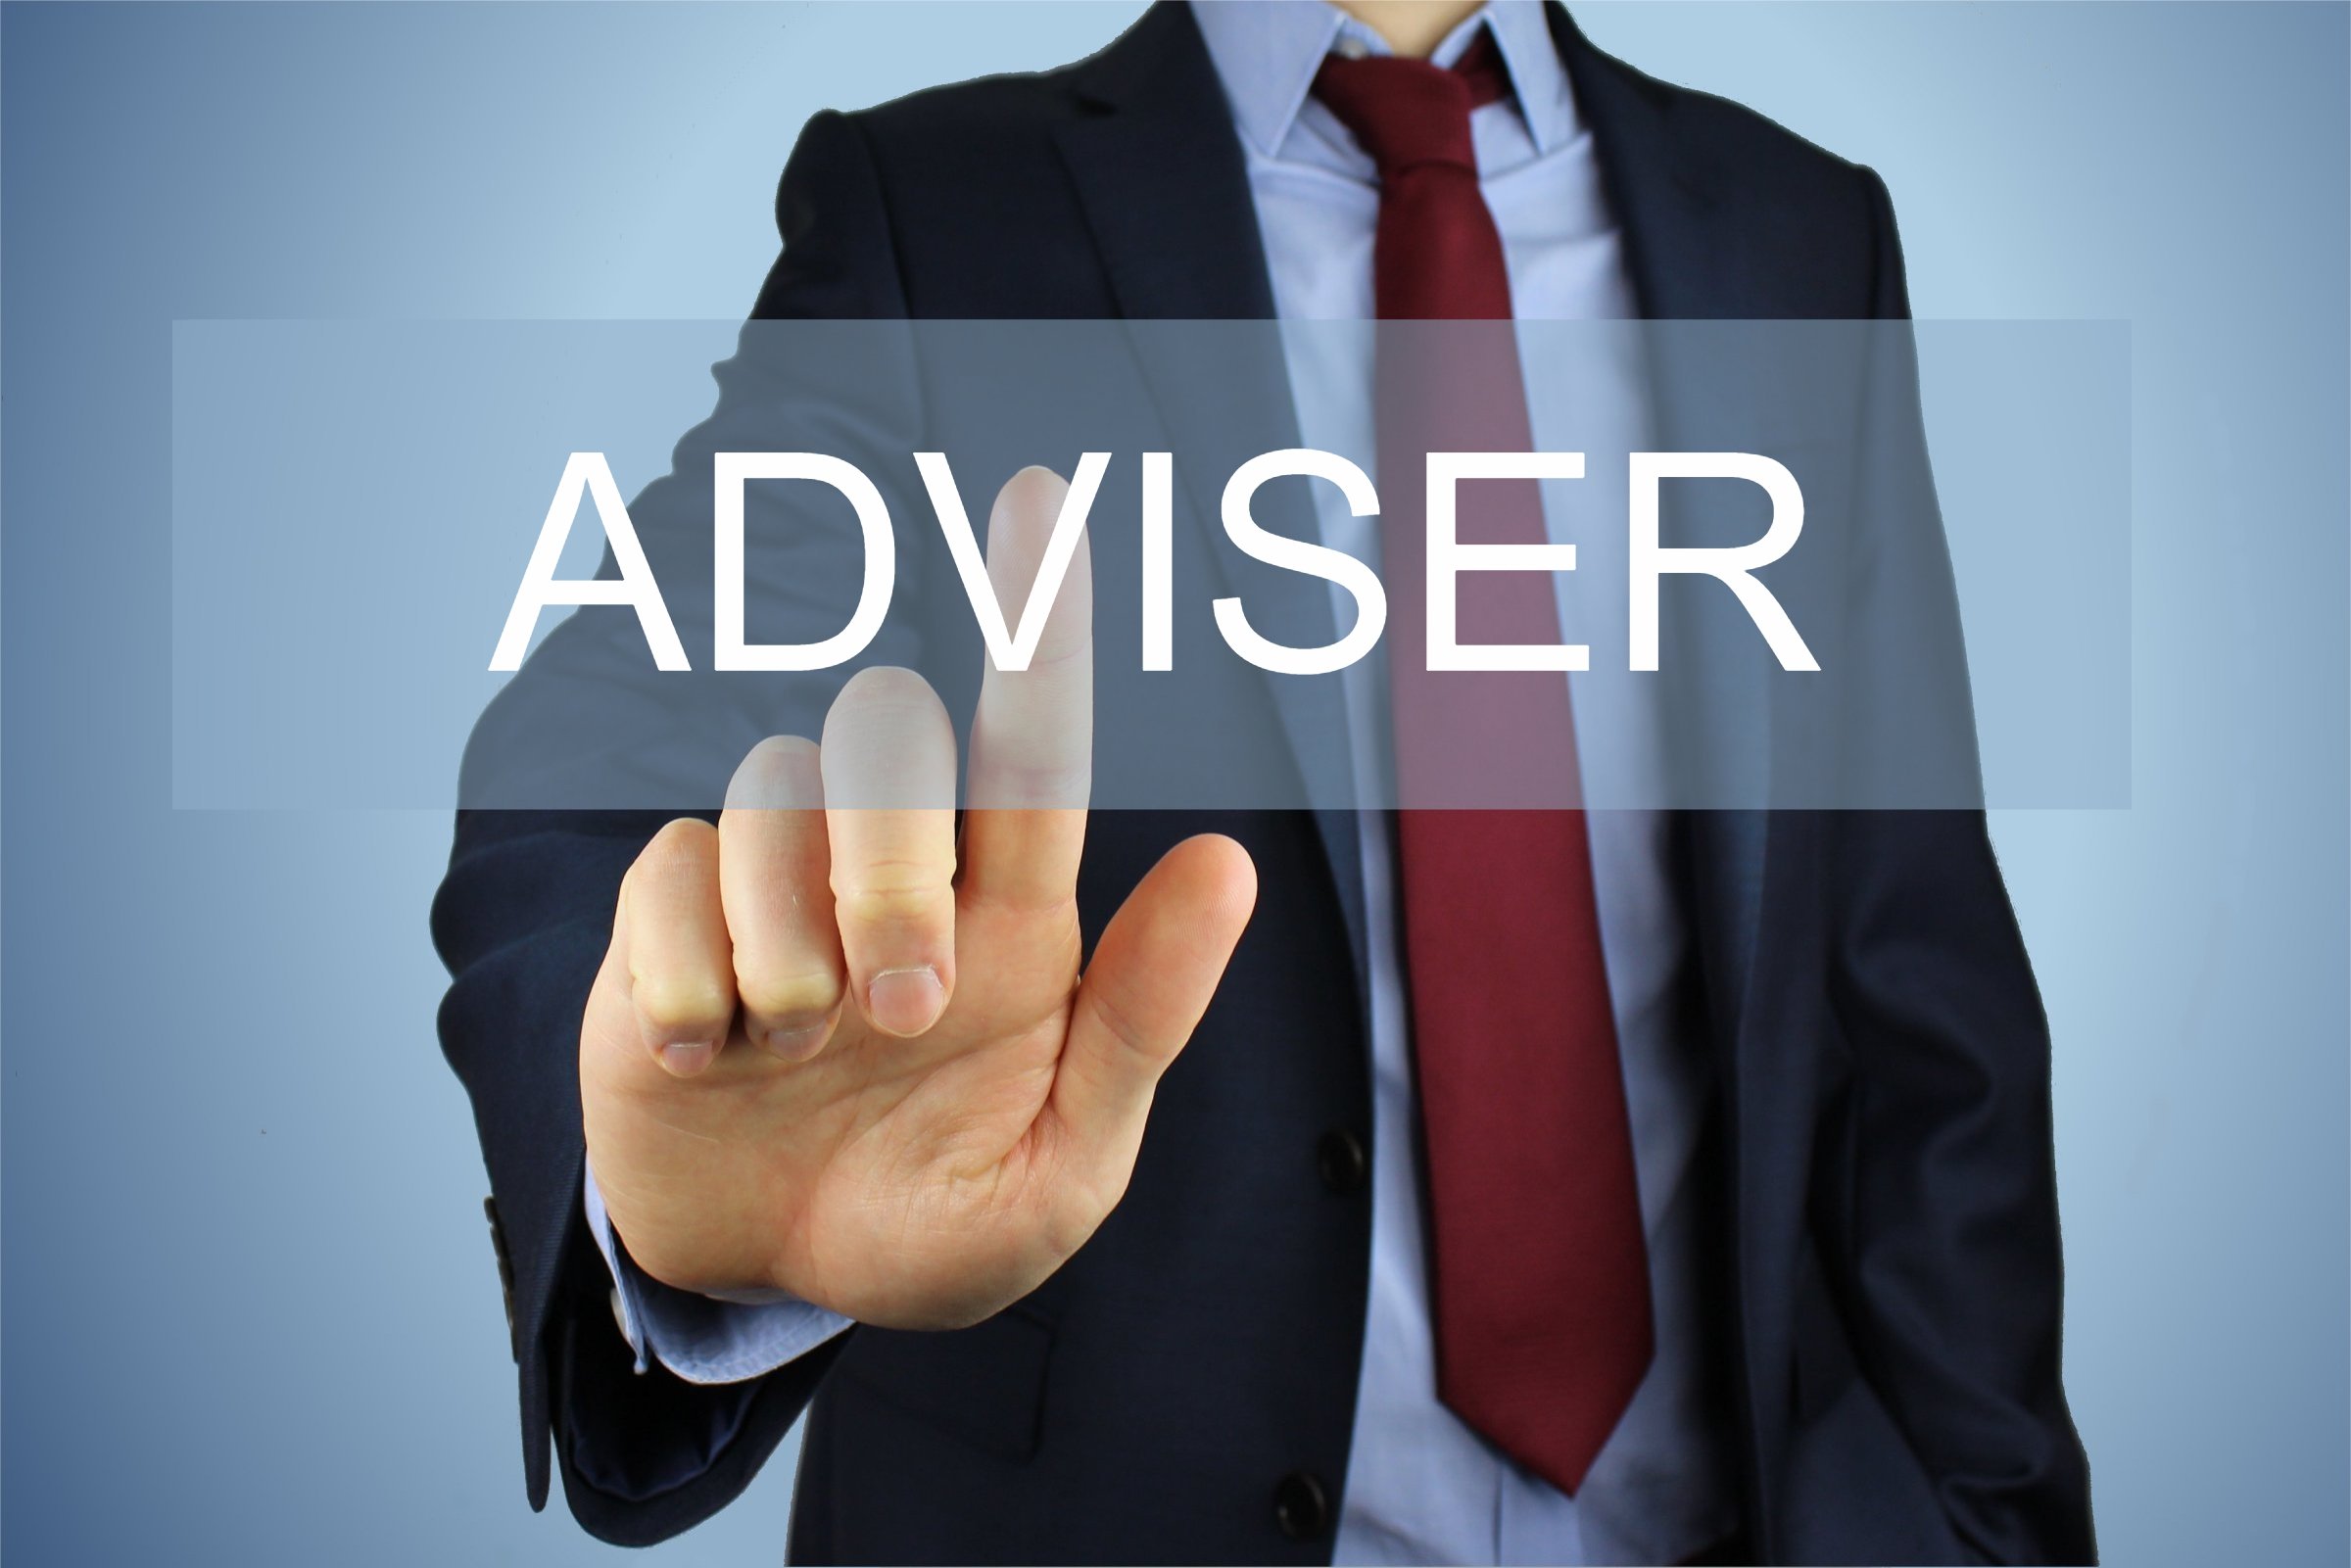 O que significa adviser?